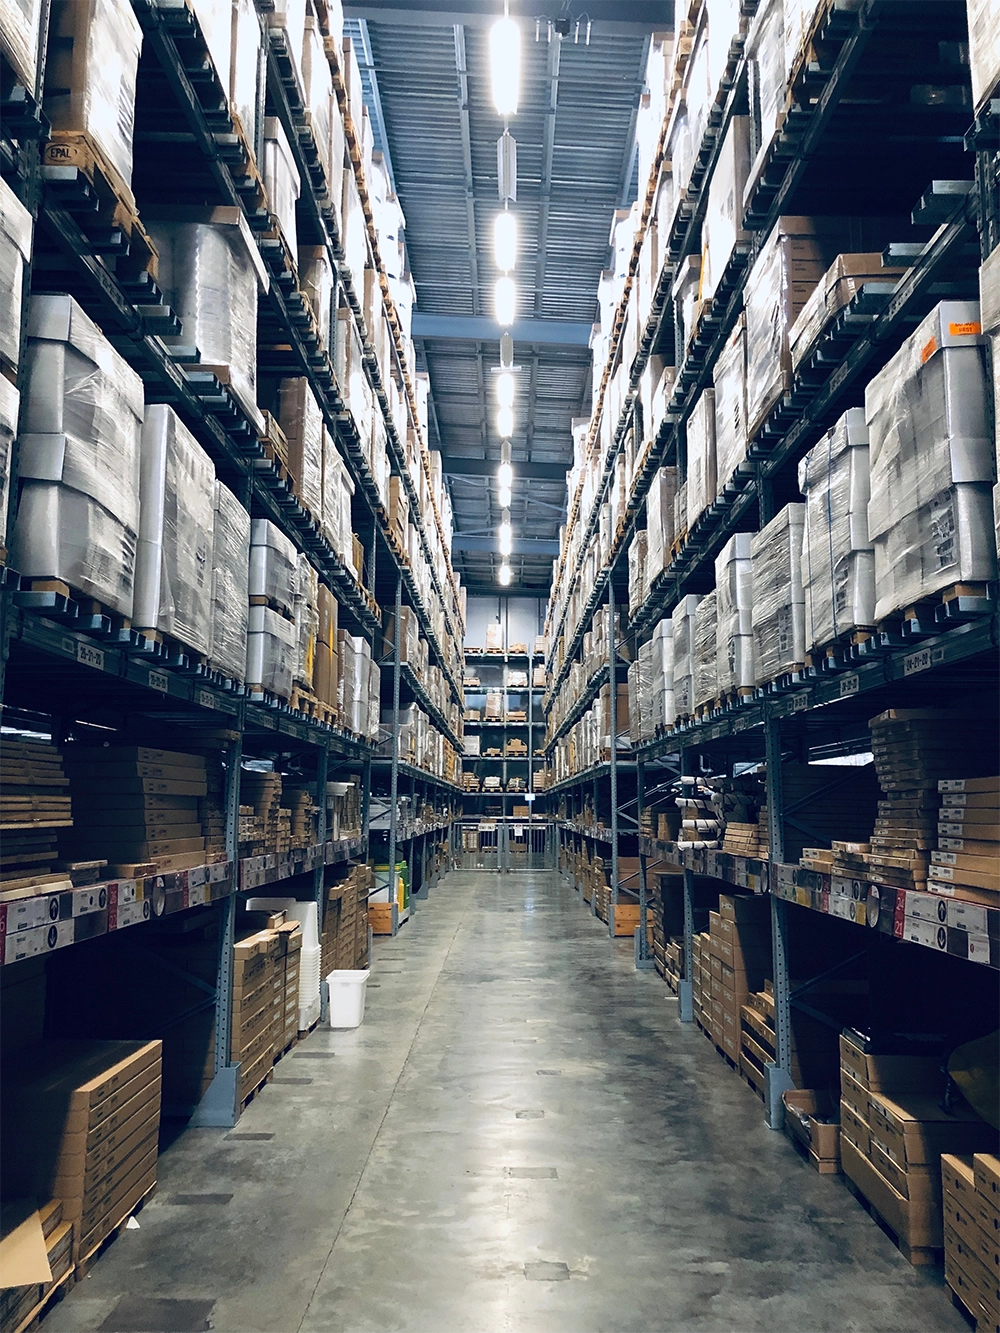 A warehouse aisle